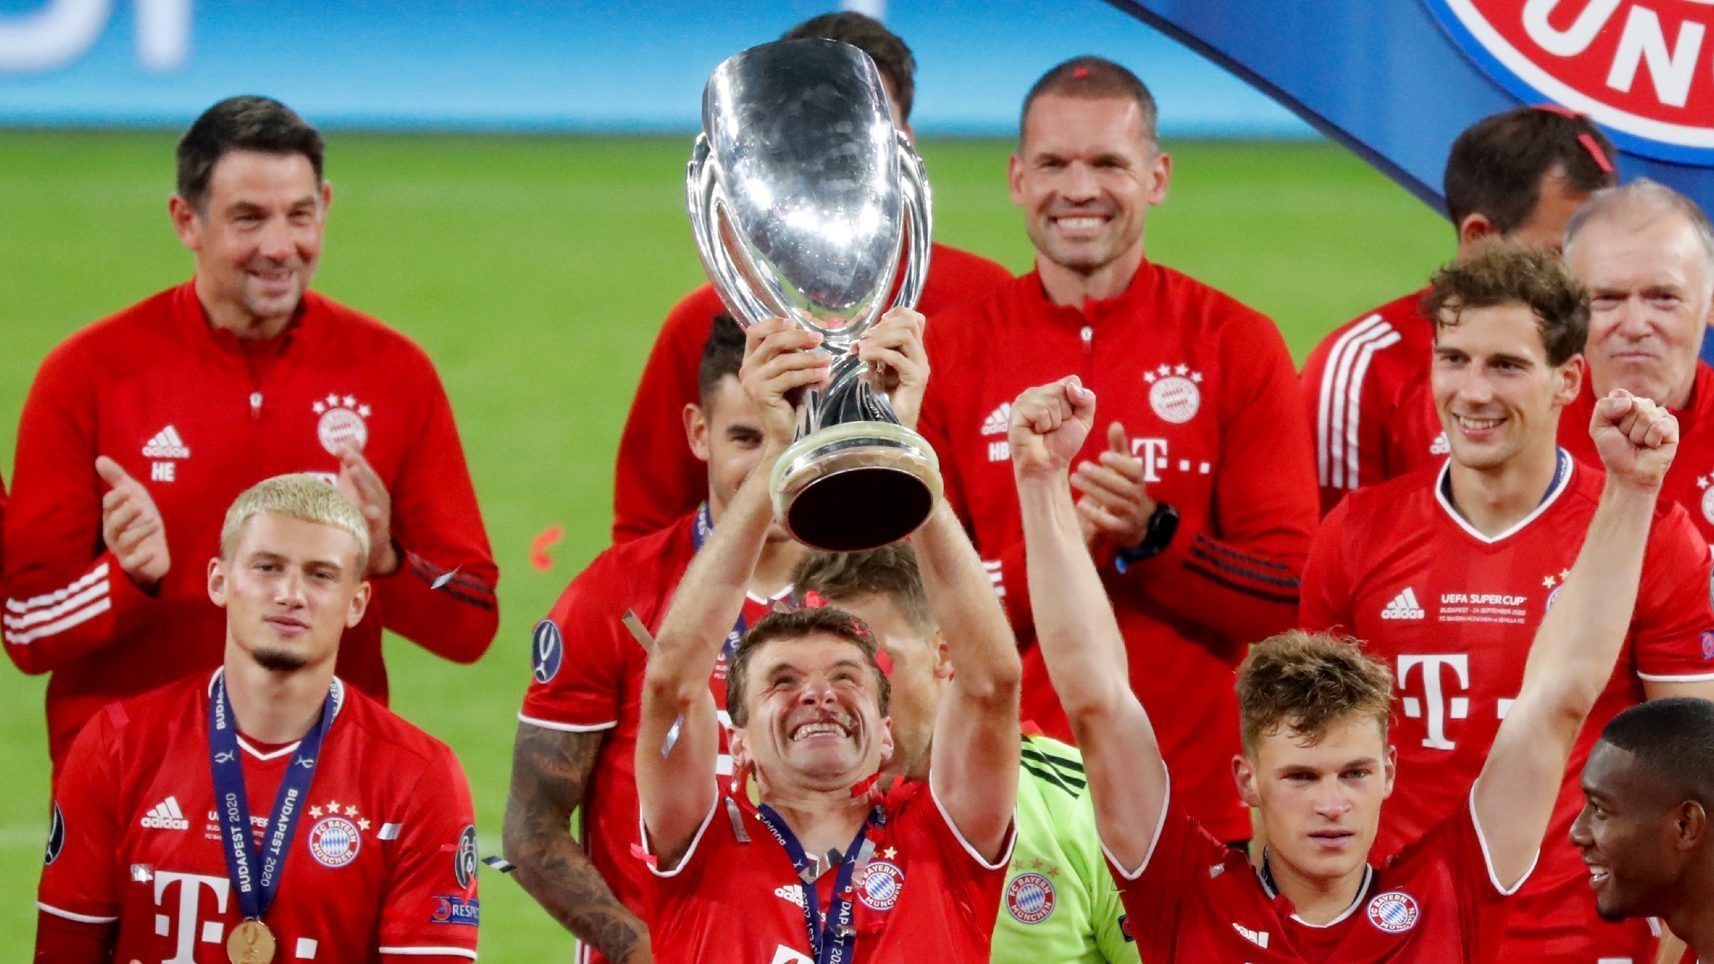 
                <strong>Titel (FC Bayern)</strong><br>
                Wenn Thomas Müller irgendwann seine Karriere beendet, wird er sicherlich als einer der erfolgreichsten deutschen Spieler in der Geschichte eingehen. Zehn deutschen Meisterschaften, sechs DFB-Pokalsiege, zwei Gewinne der UEFA Champions League, zwei Klubweltmeisterschaften, sieben deutsche Supercup-Erfolge und zwei UEFA-Supercup-Erfolge konnte sich der gebürtige Bayer bislang sichern. 
              